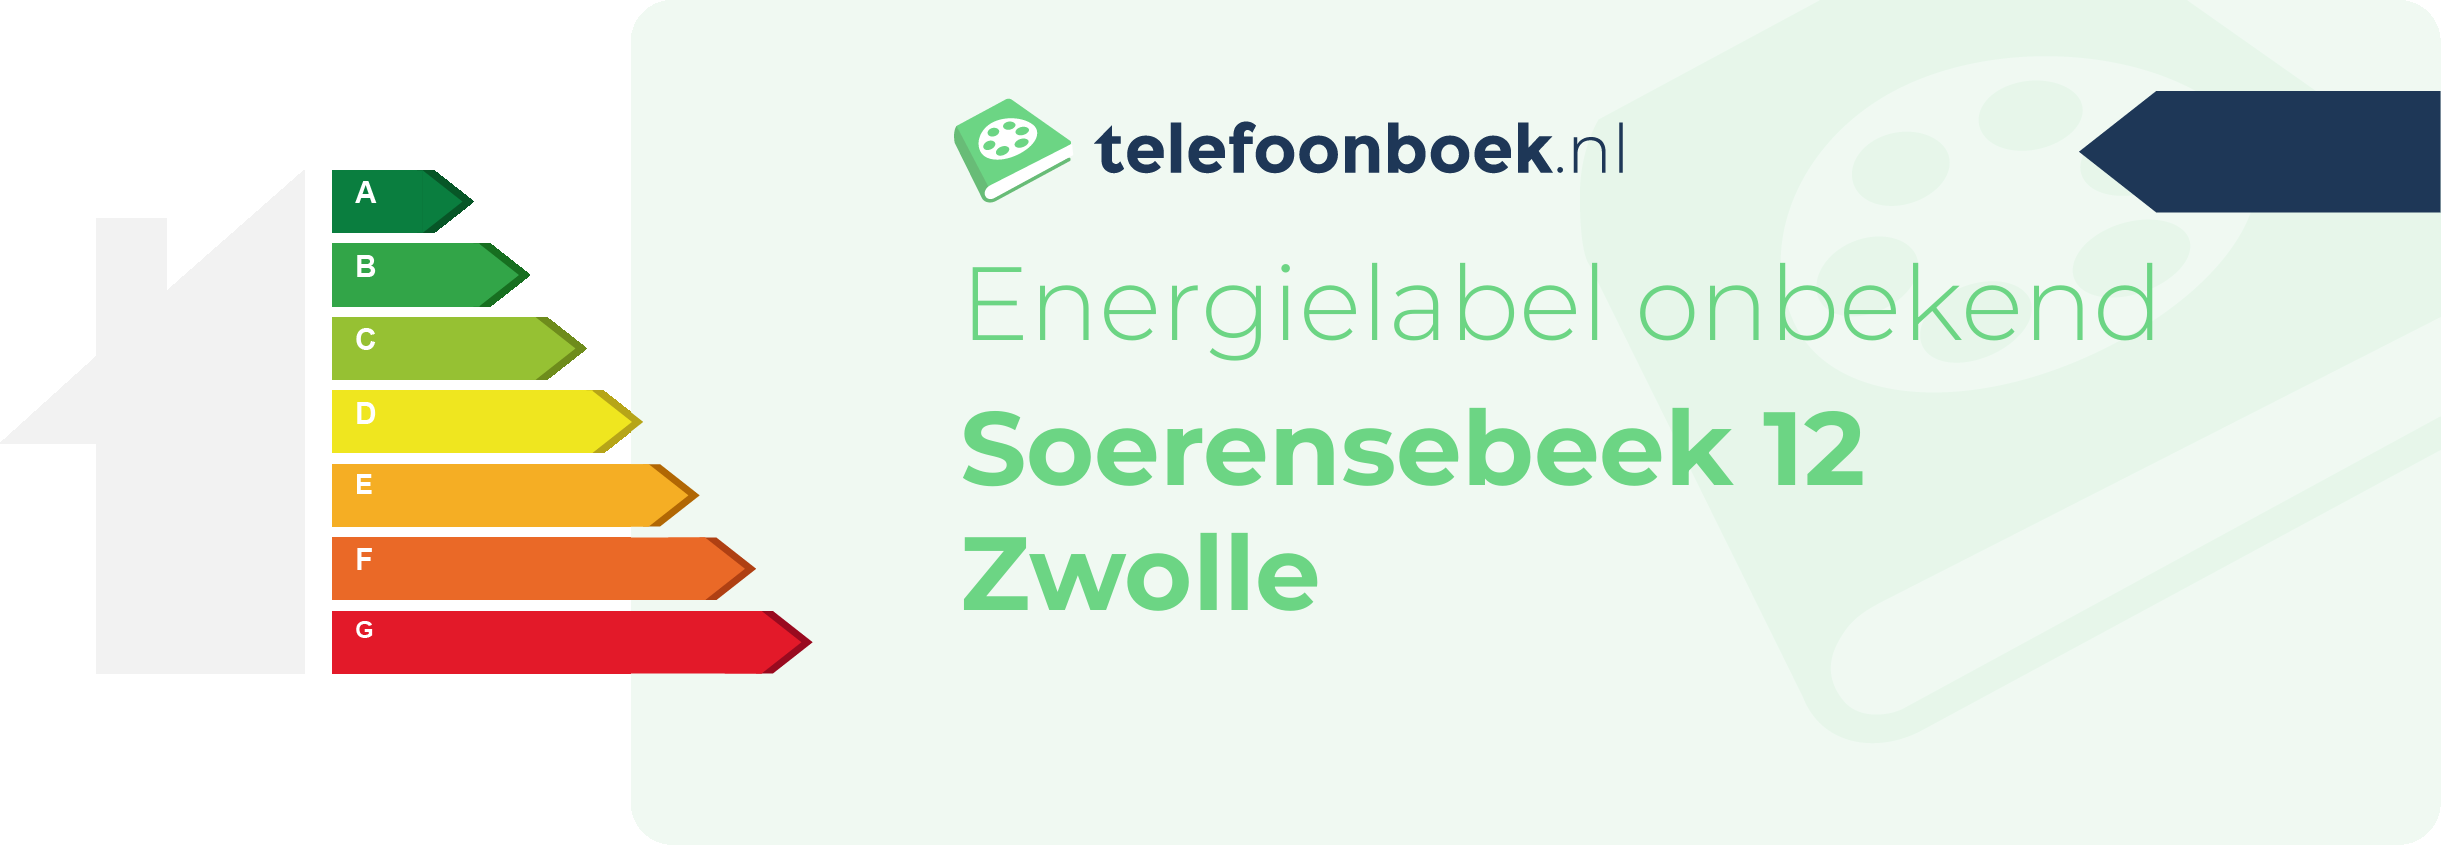 Energielabel Soerensebeek 12 Zwolle